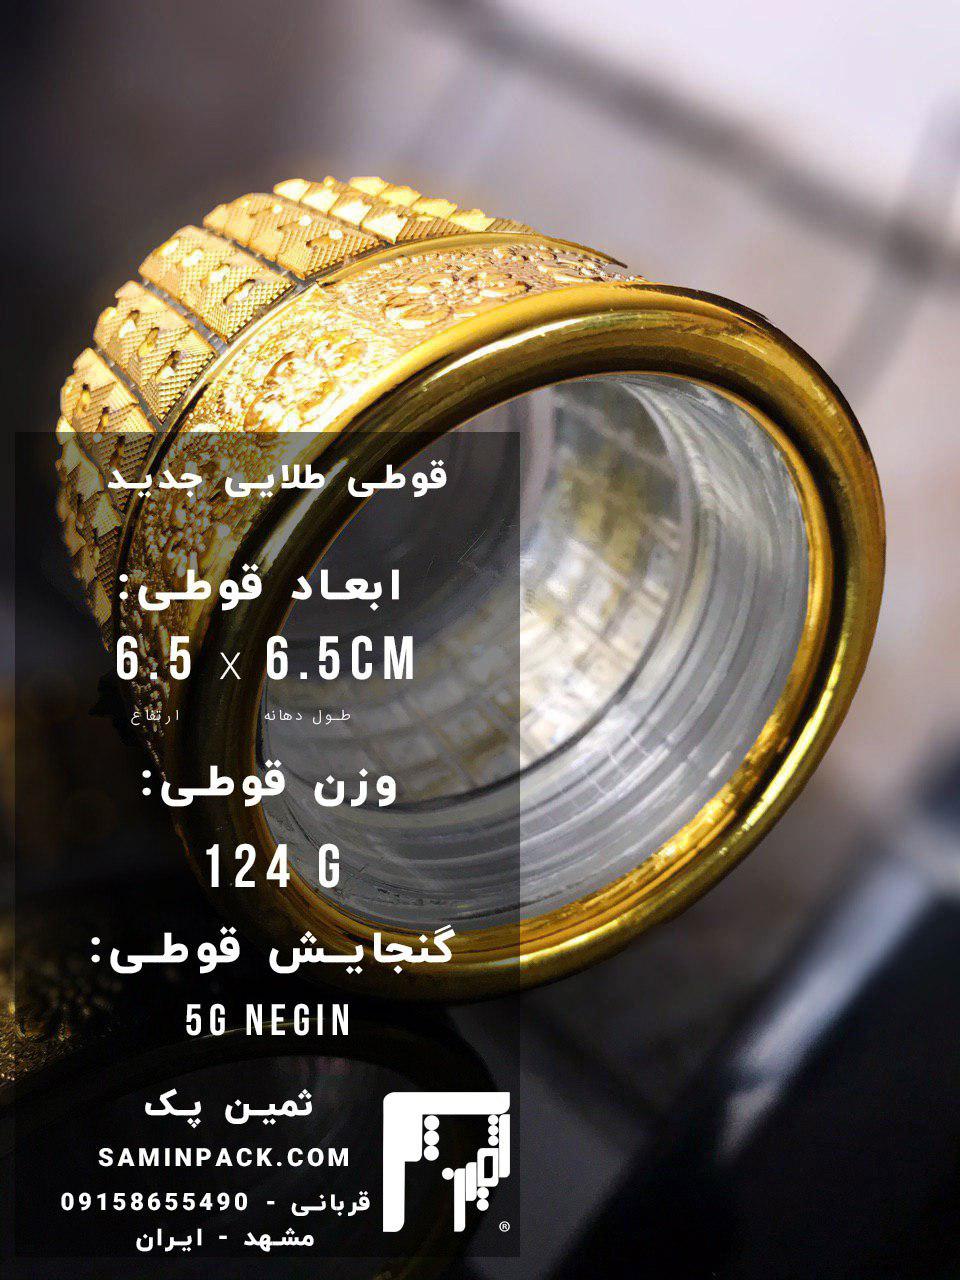 فروش ظرف زعفران در مشهد از فروشگاه ثمین پک